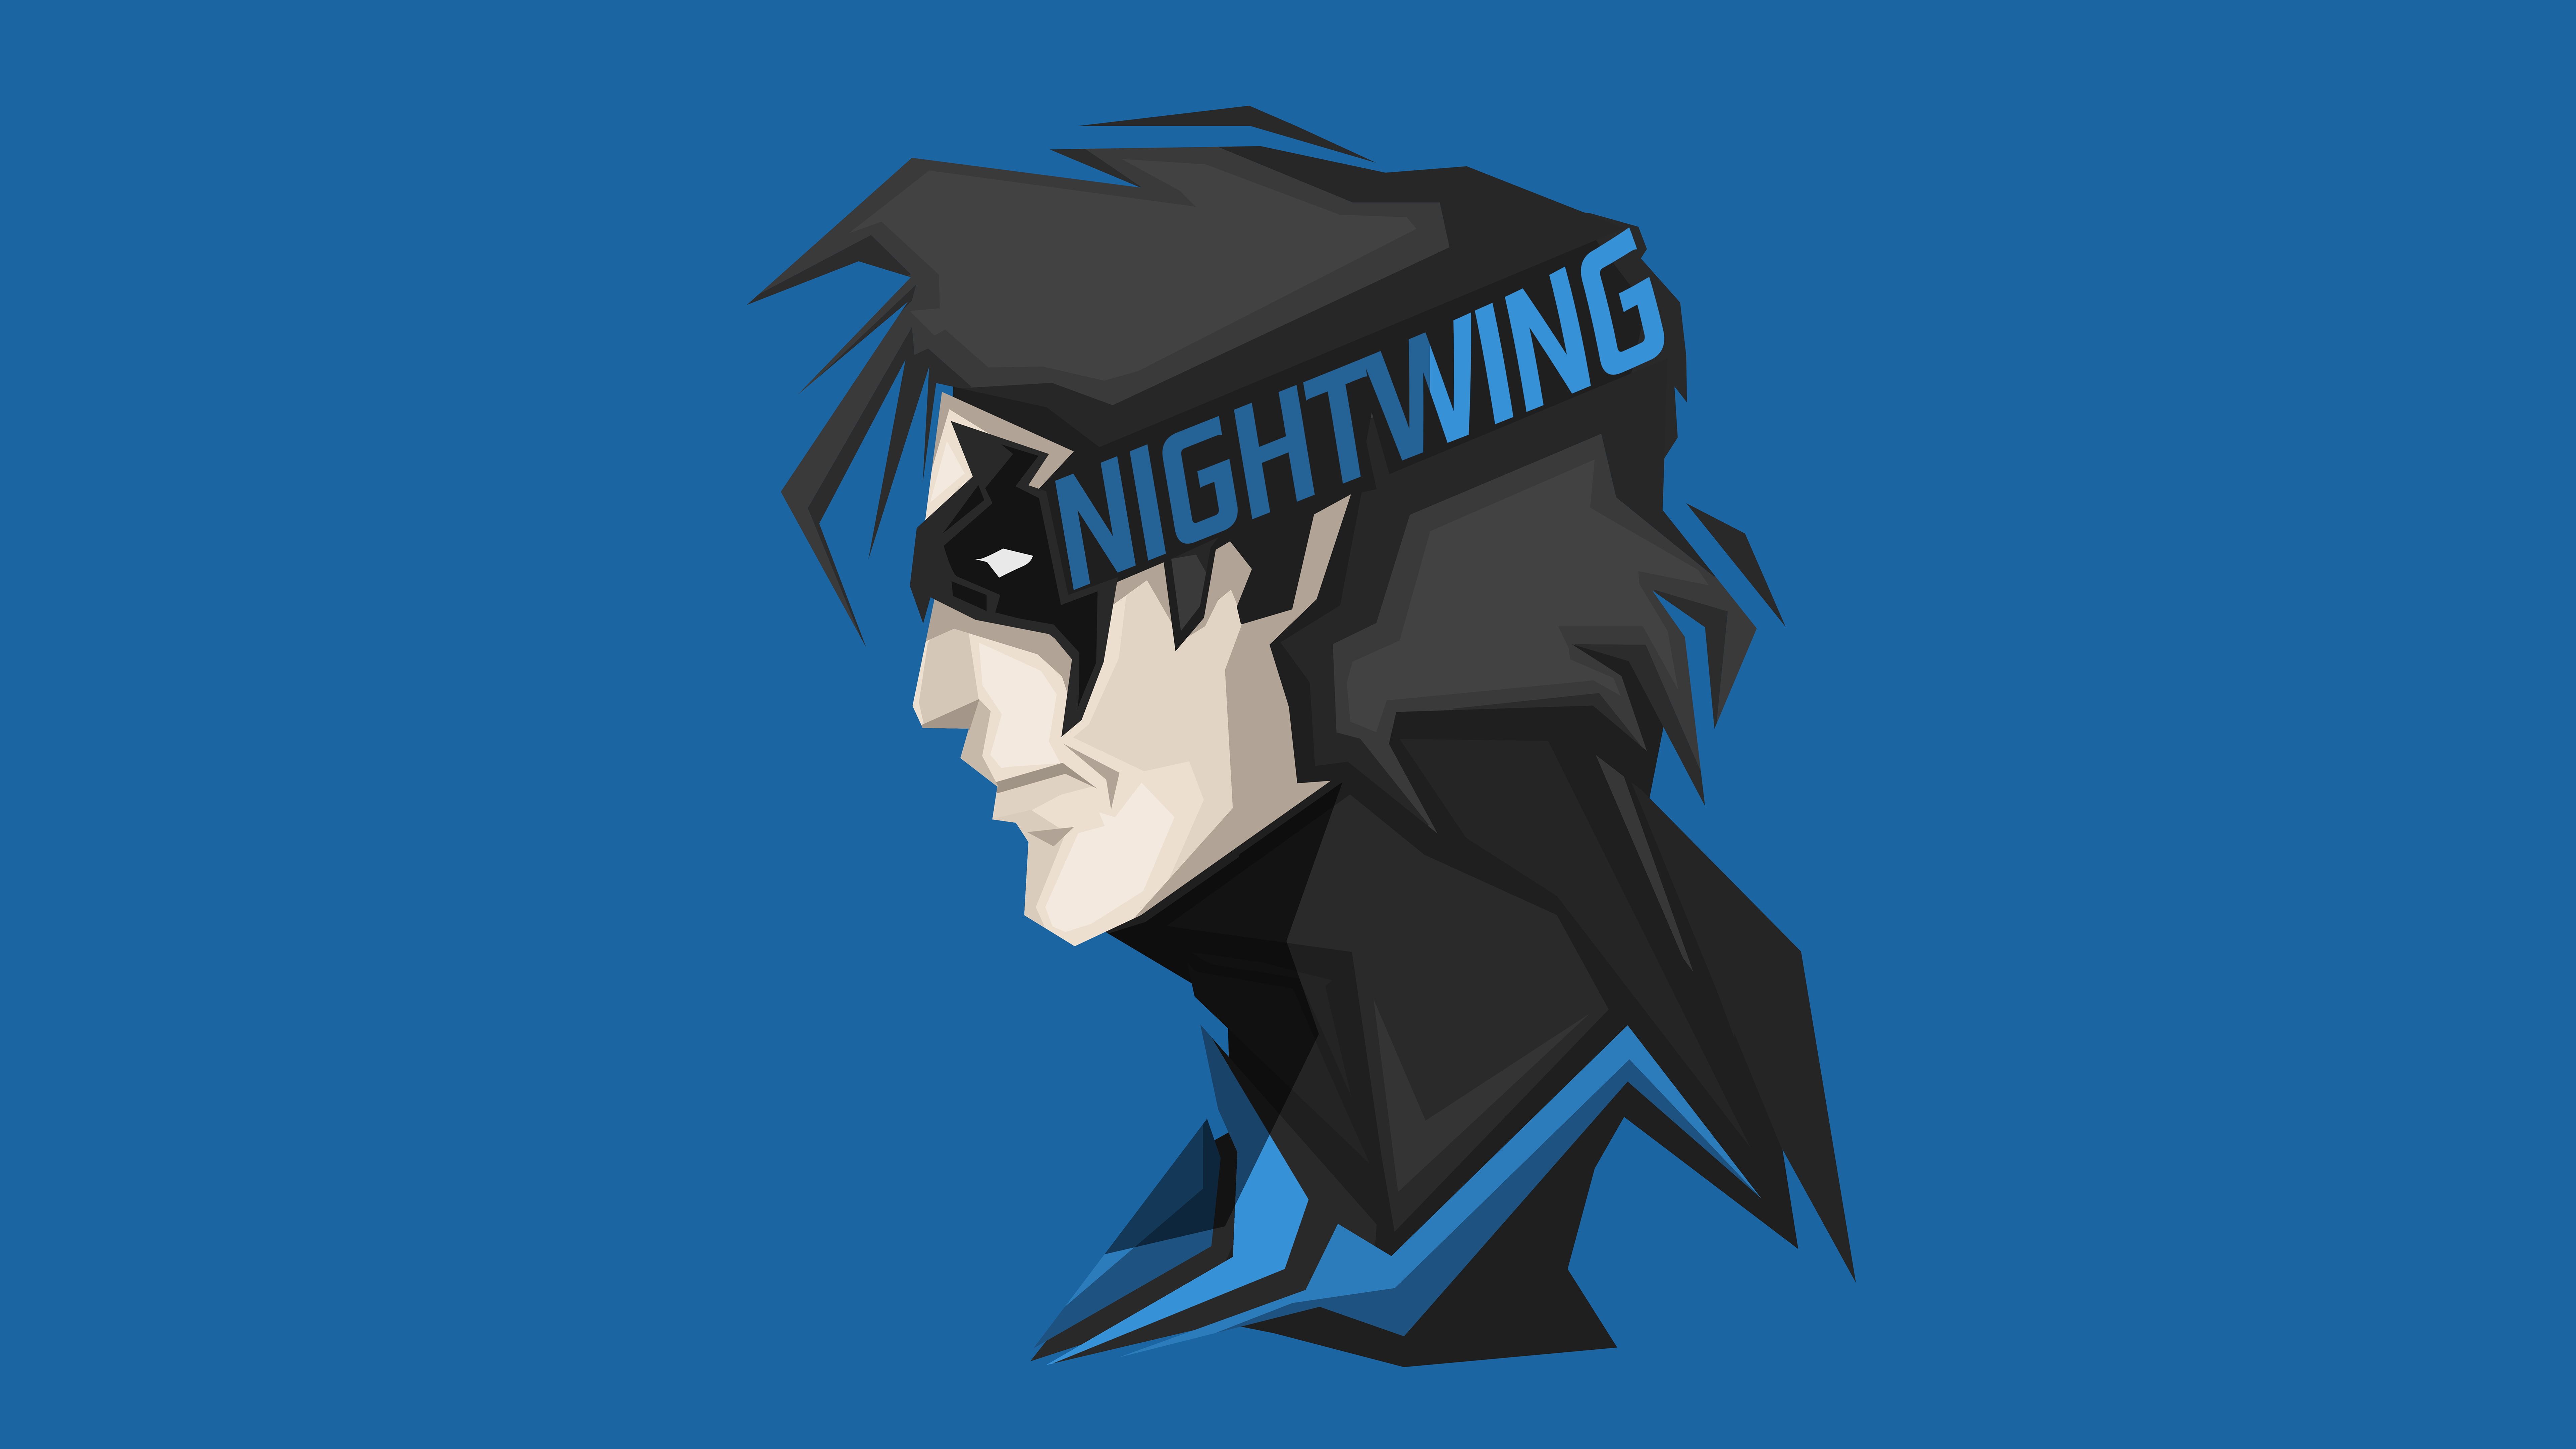 Blue #Minimal #Headshot K DC Comics #Nightwing K #Superhero K # wallpaper #hdwallpaper #desktop. Nightwing, Superhero wallpaper, Minimal wallpaper